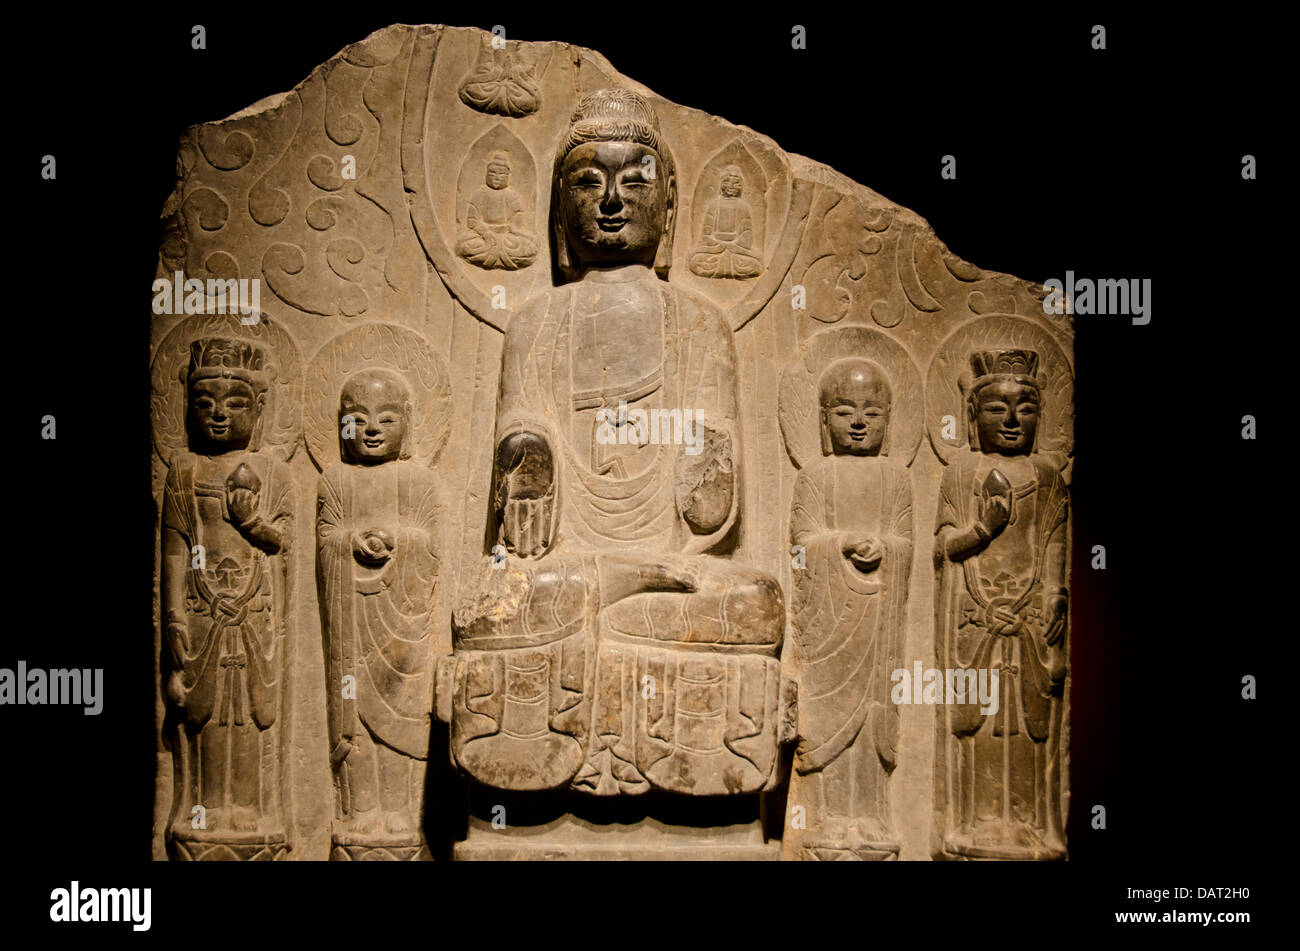 China, Shanghai, el museo de Shanghai. Antigua colección de piedra labrada, estatua de Buda c. 550-577 AD. Foto de stock